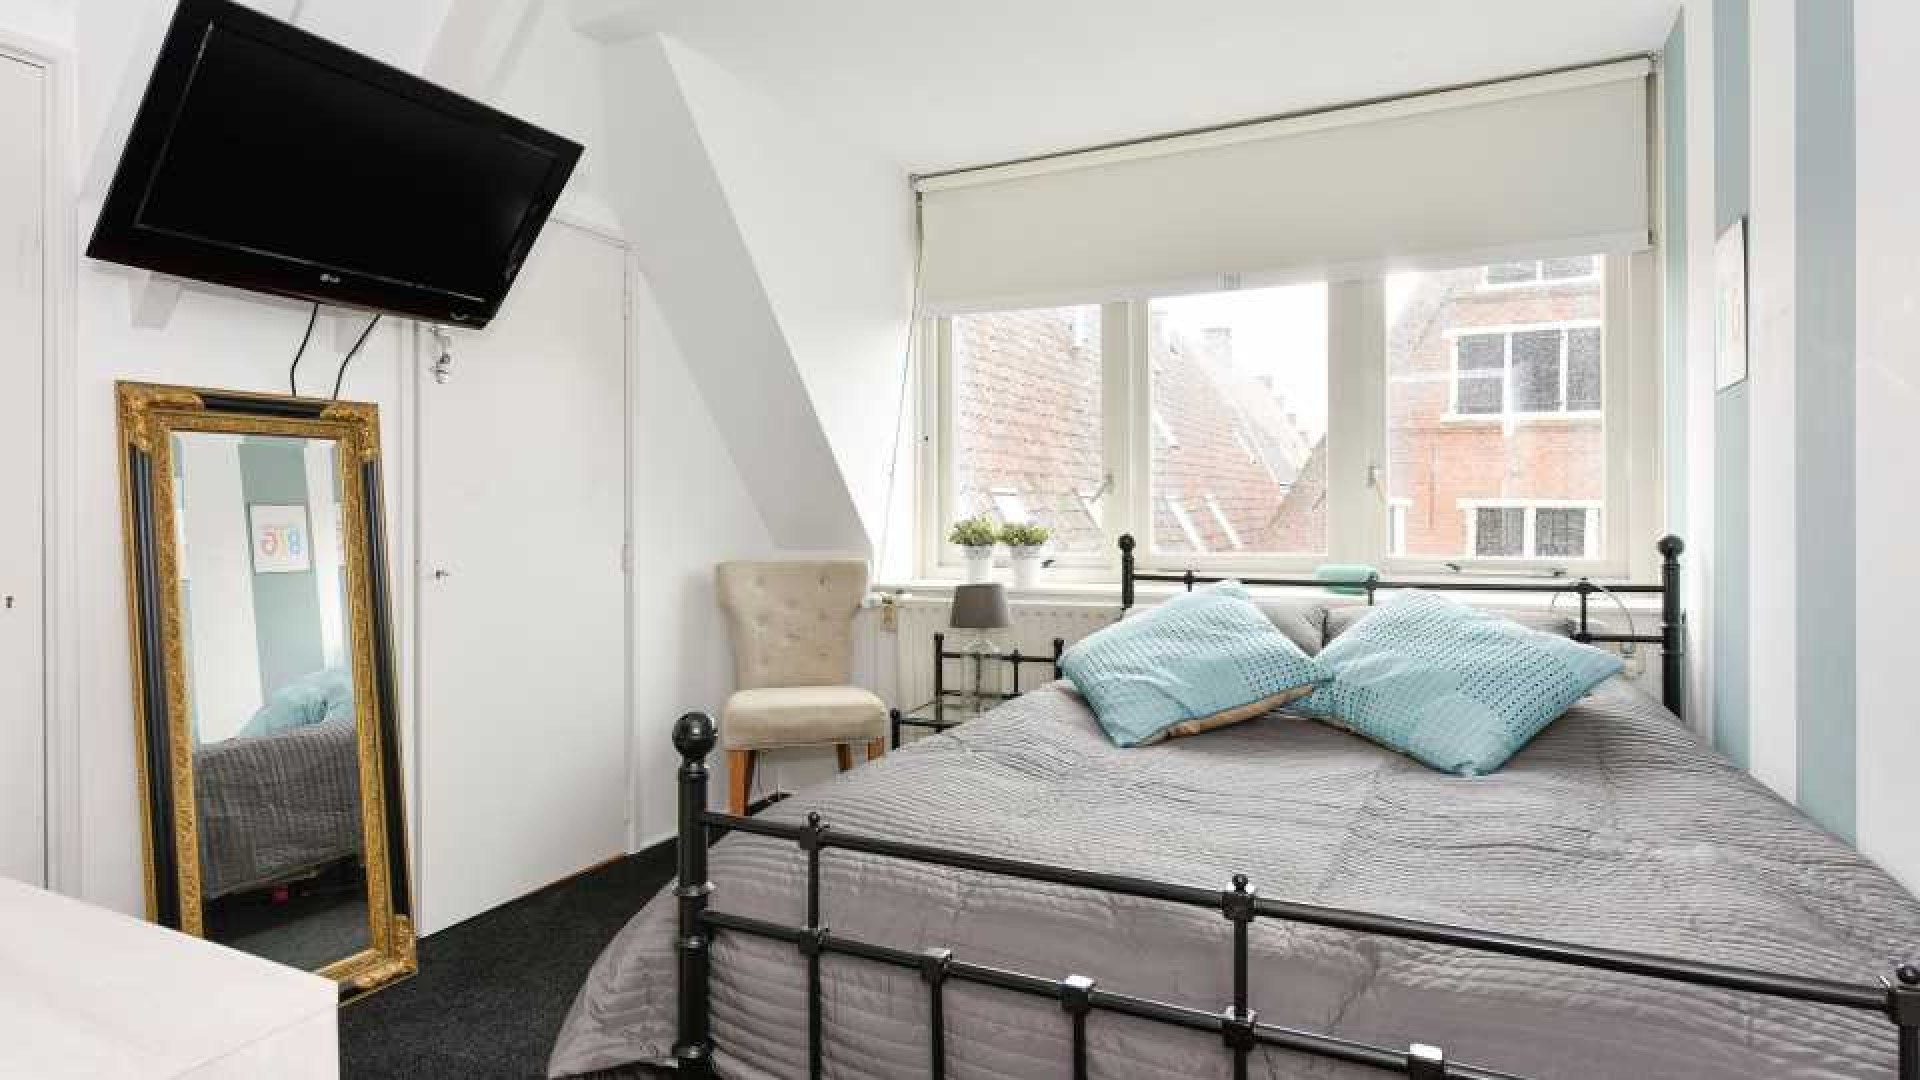 Sonja Bakker verkoopt haar huis in Hoorn behoorlijk onder de vraagprijs. Zie foto's 14